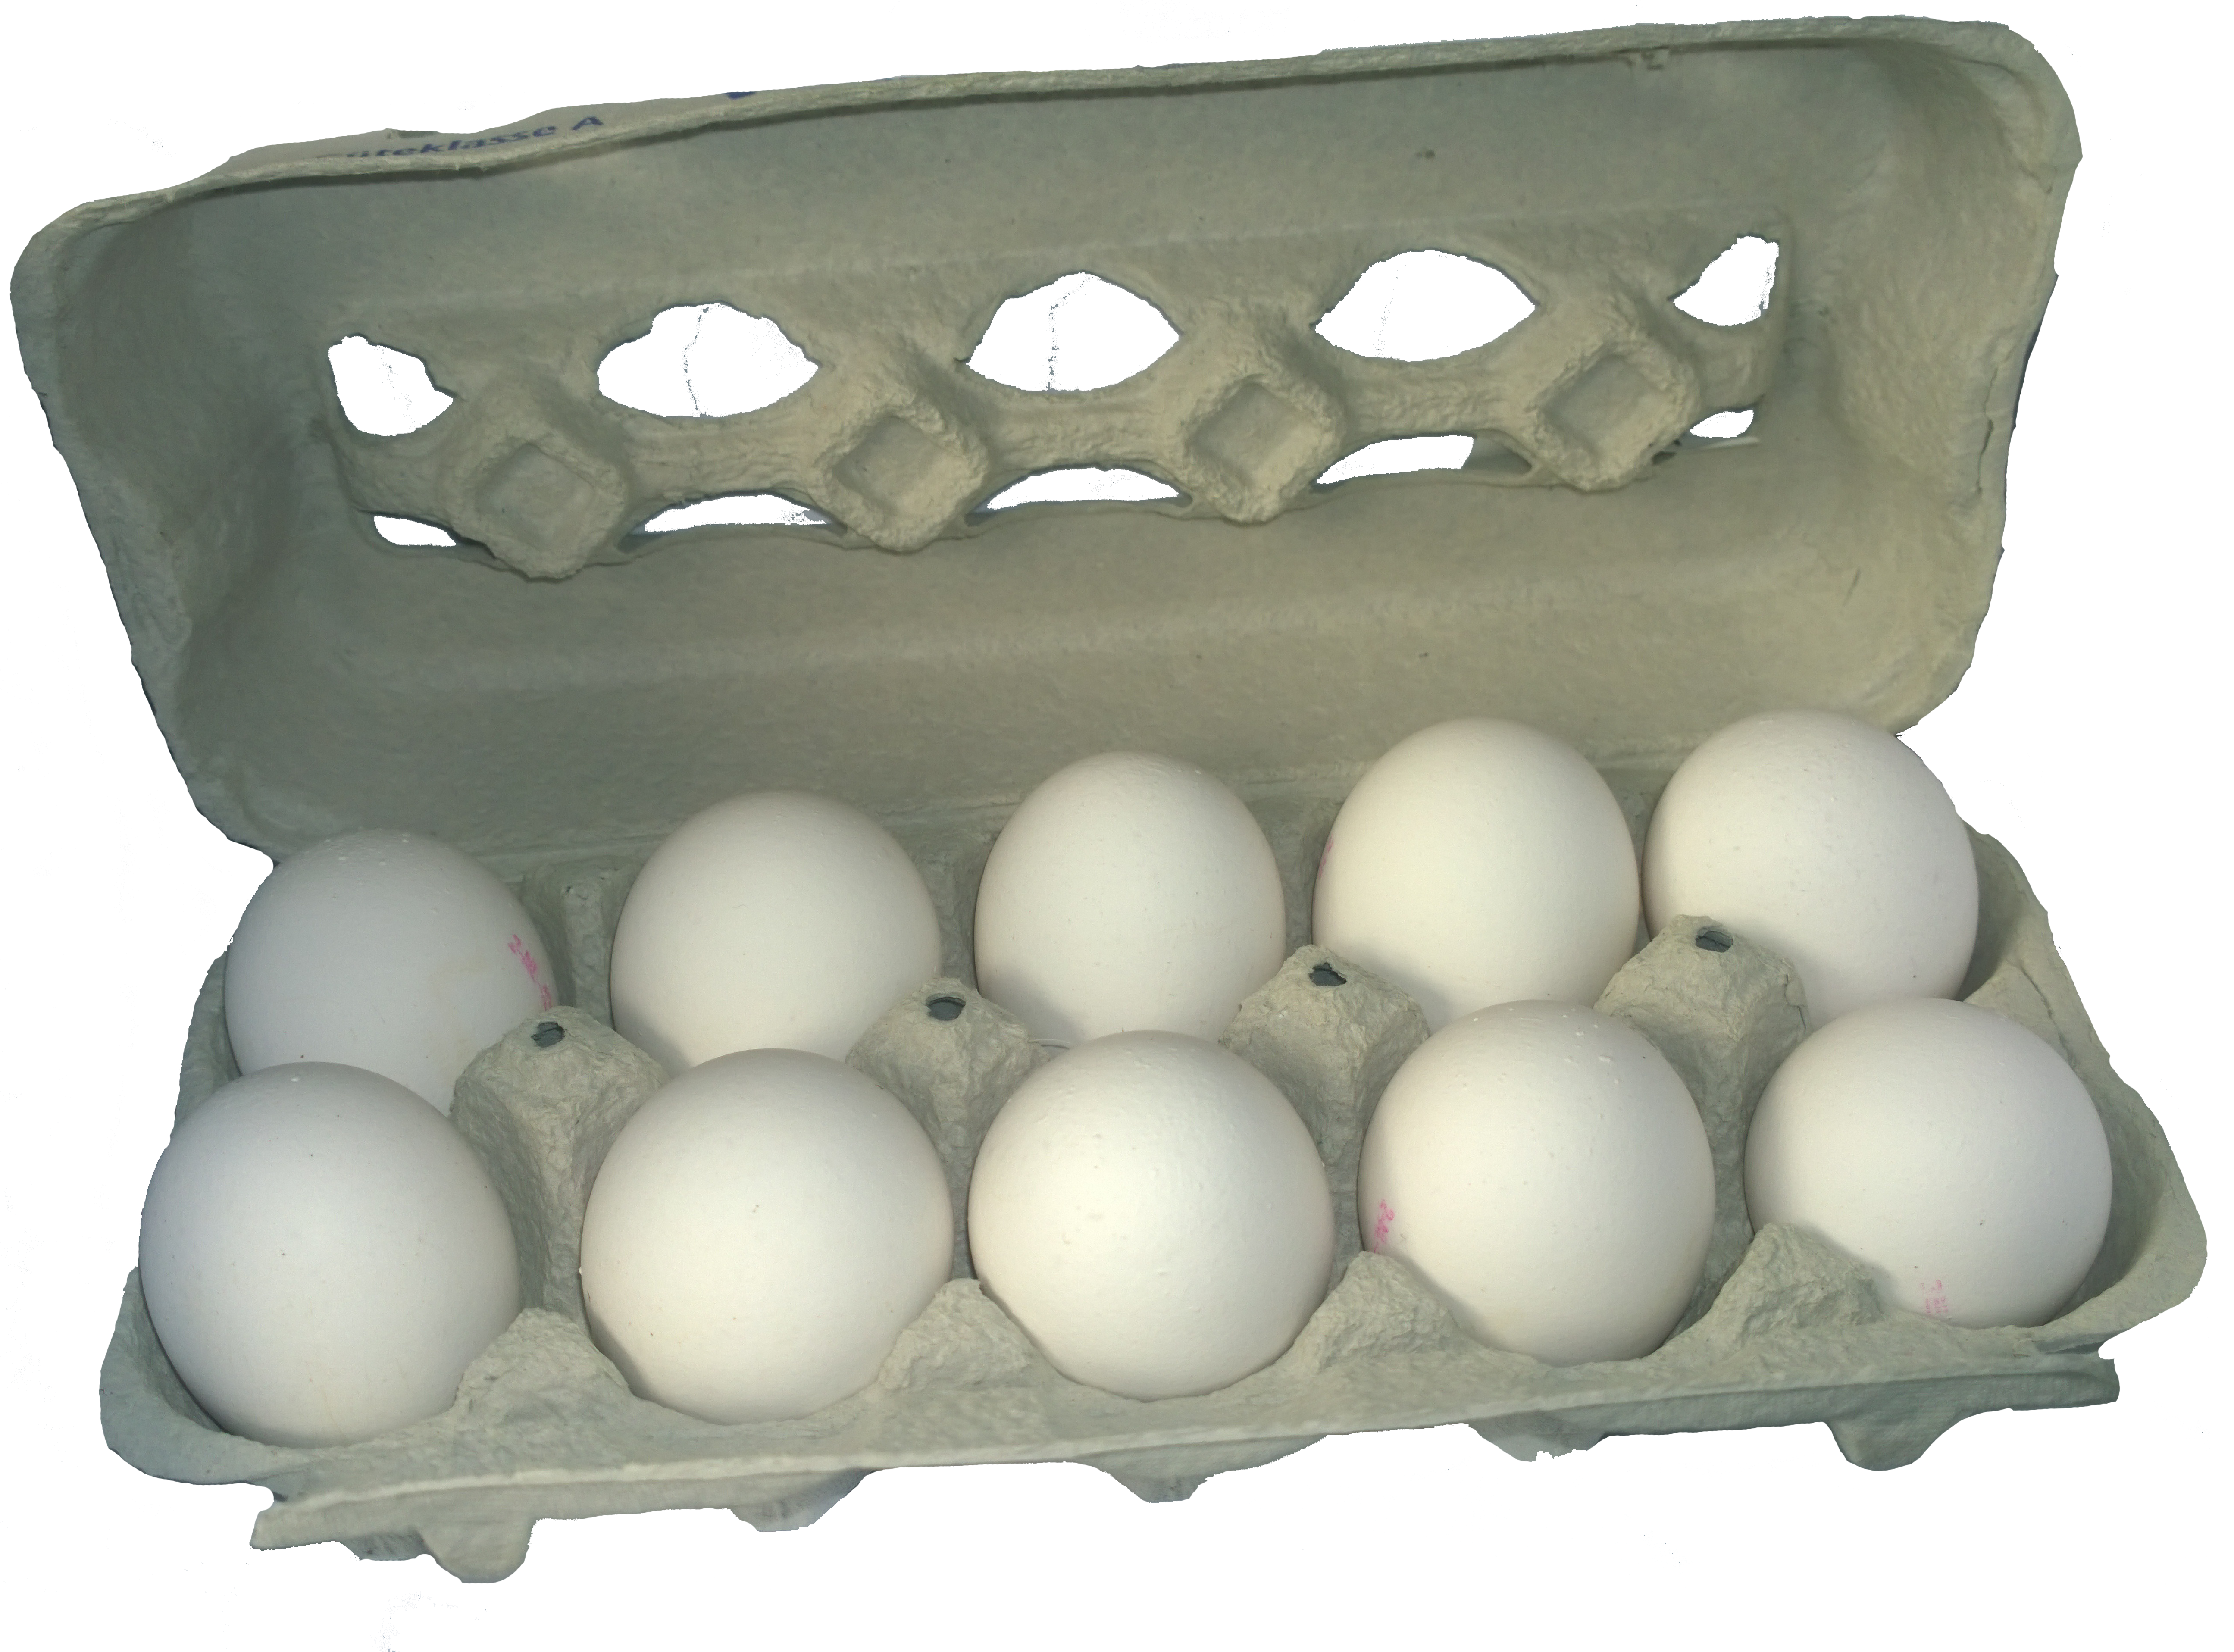 eggs clipart egg carton